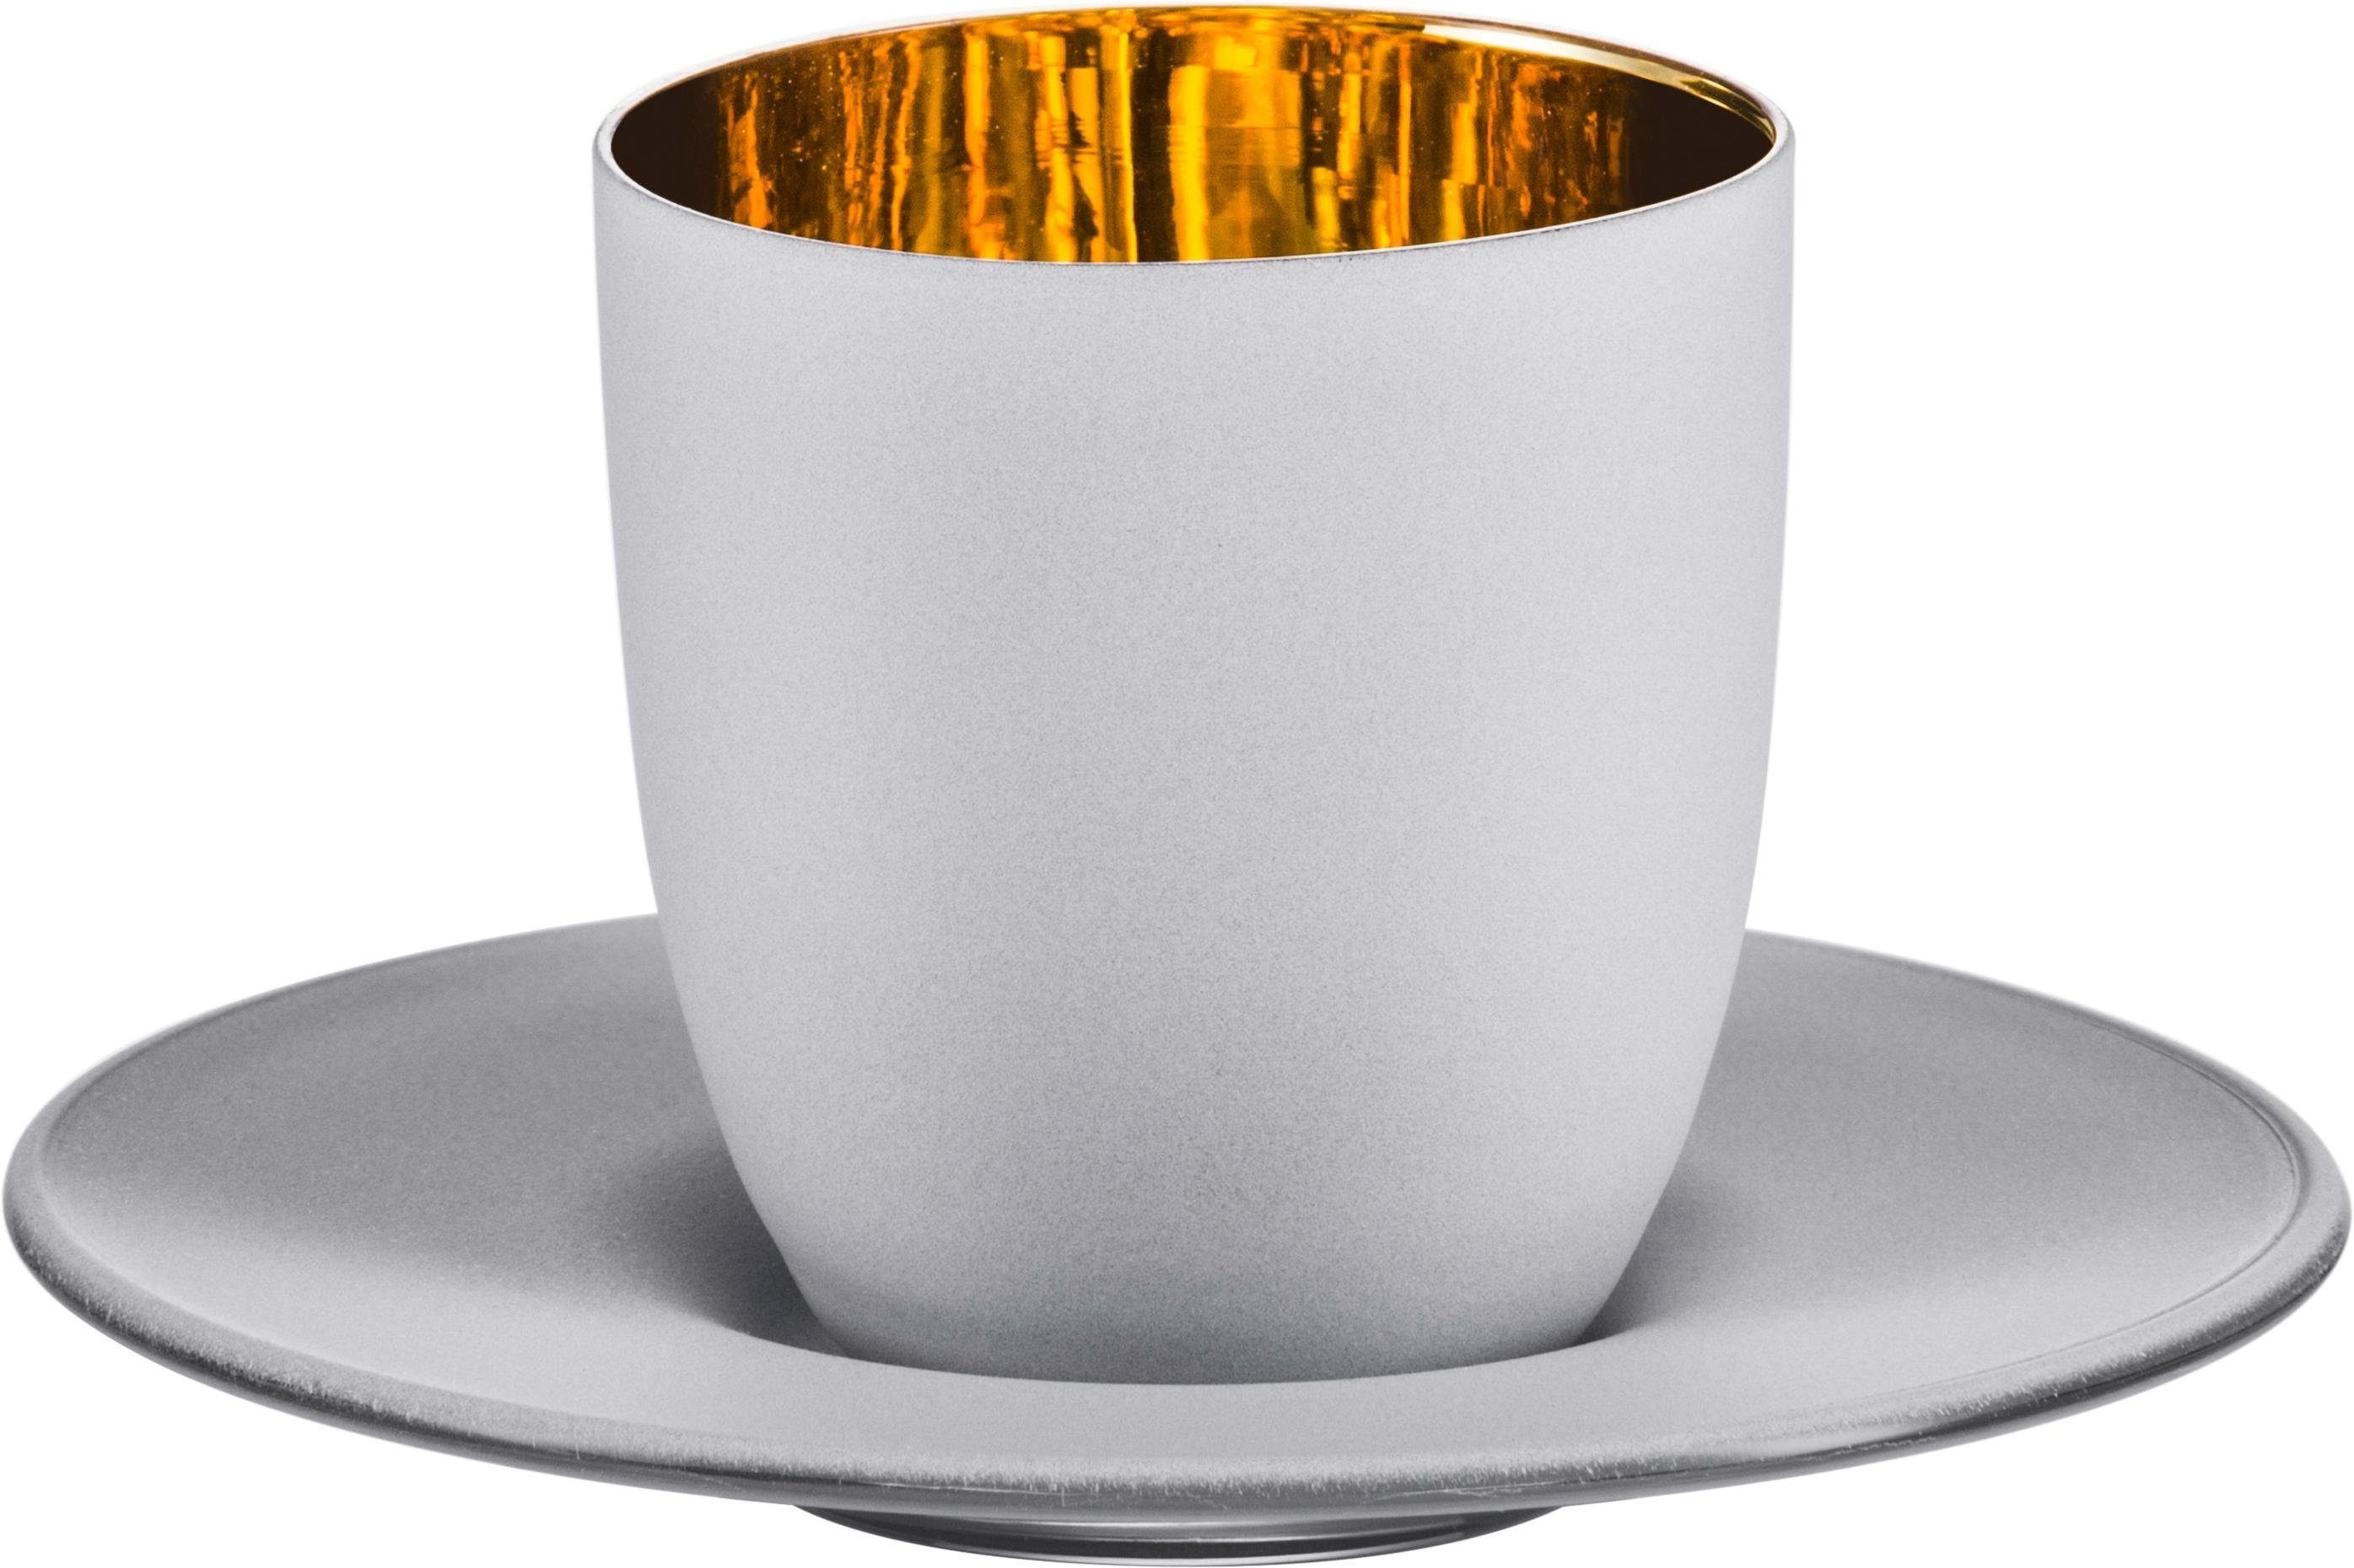 Eisch Espressoglas Cosmo gold, Kristallglas, Echtgold, handgefertigt, bleifrei, 100 ml, 2-teilig, Made in Germany